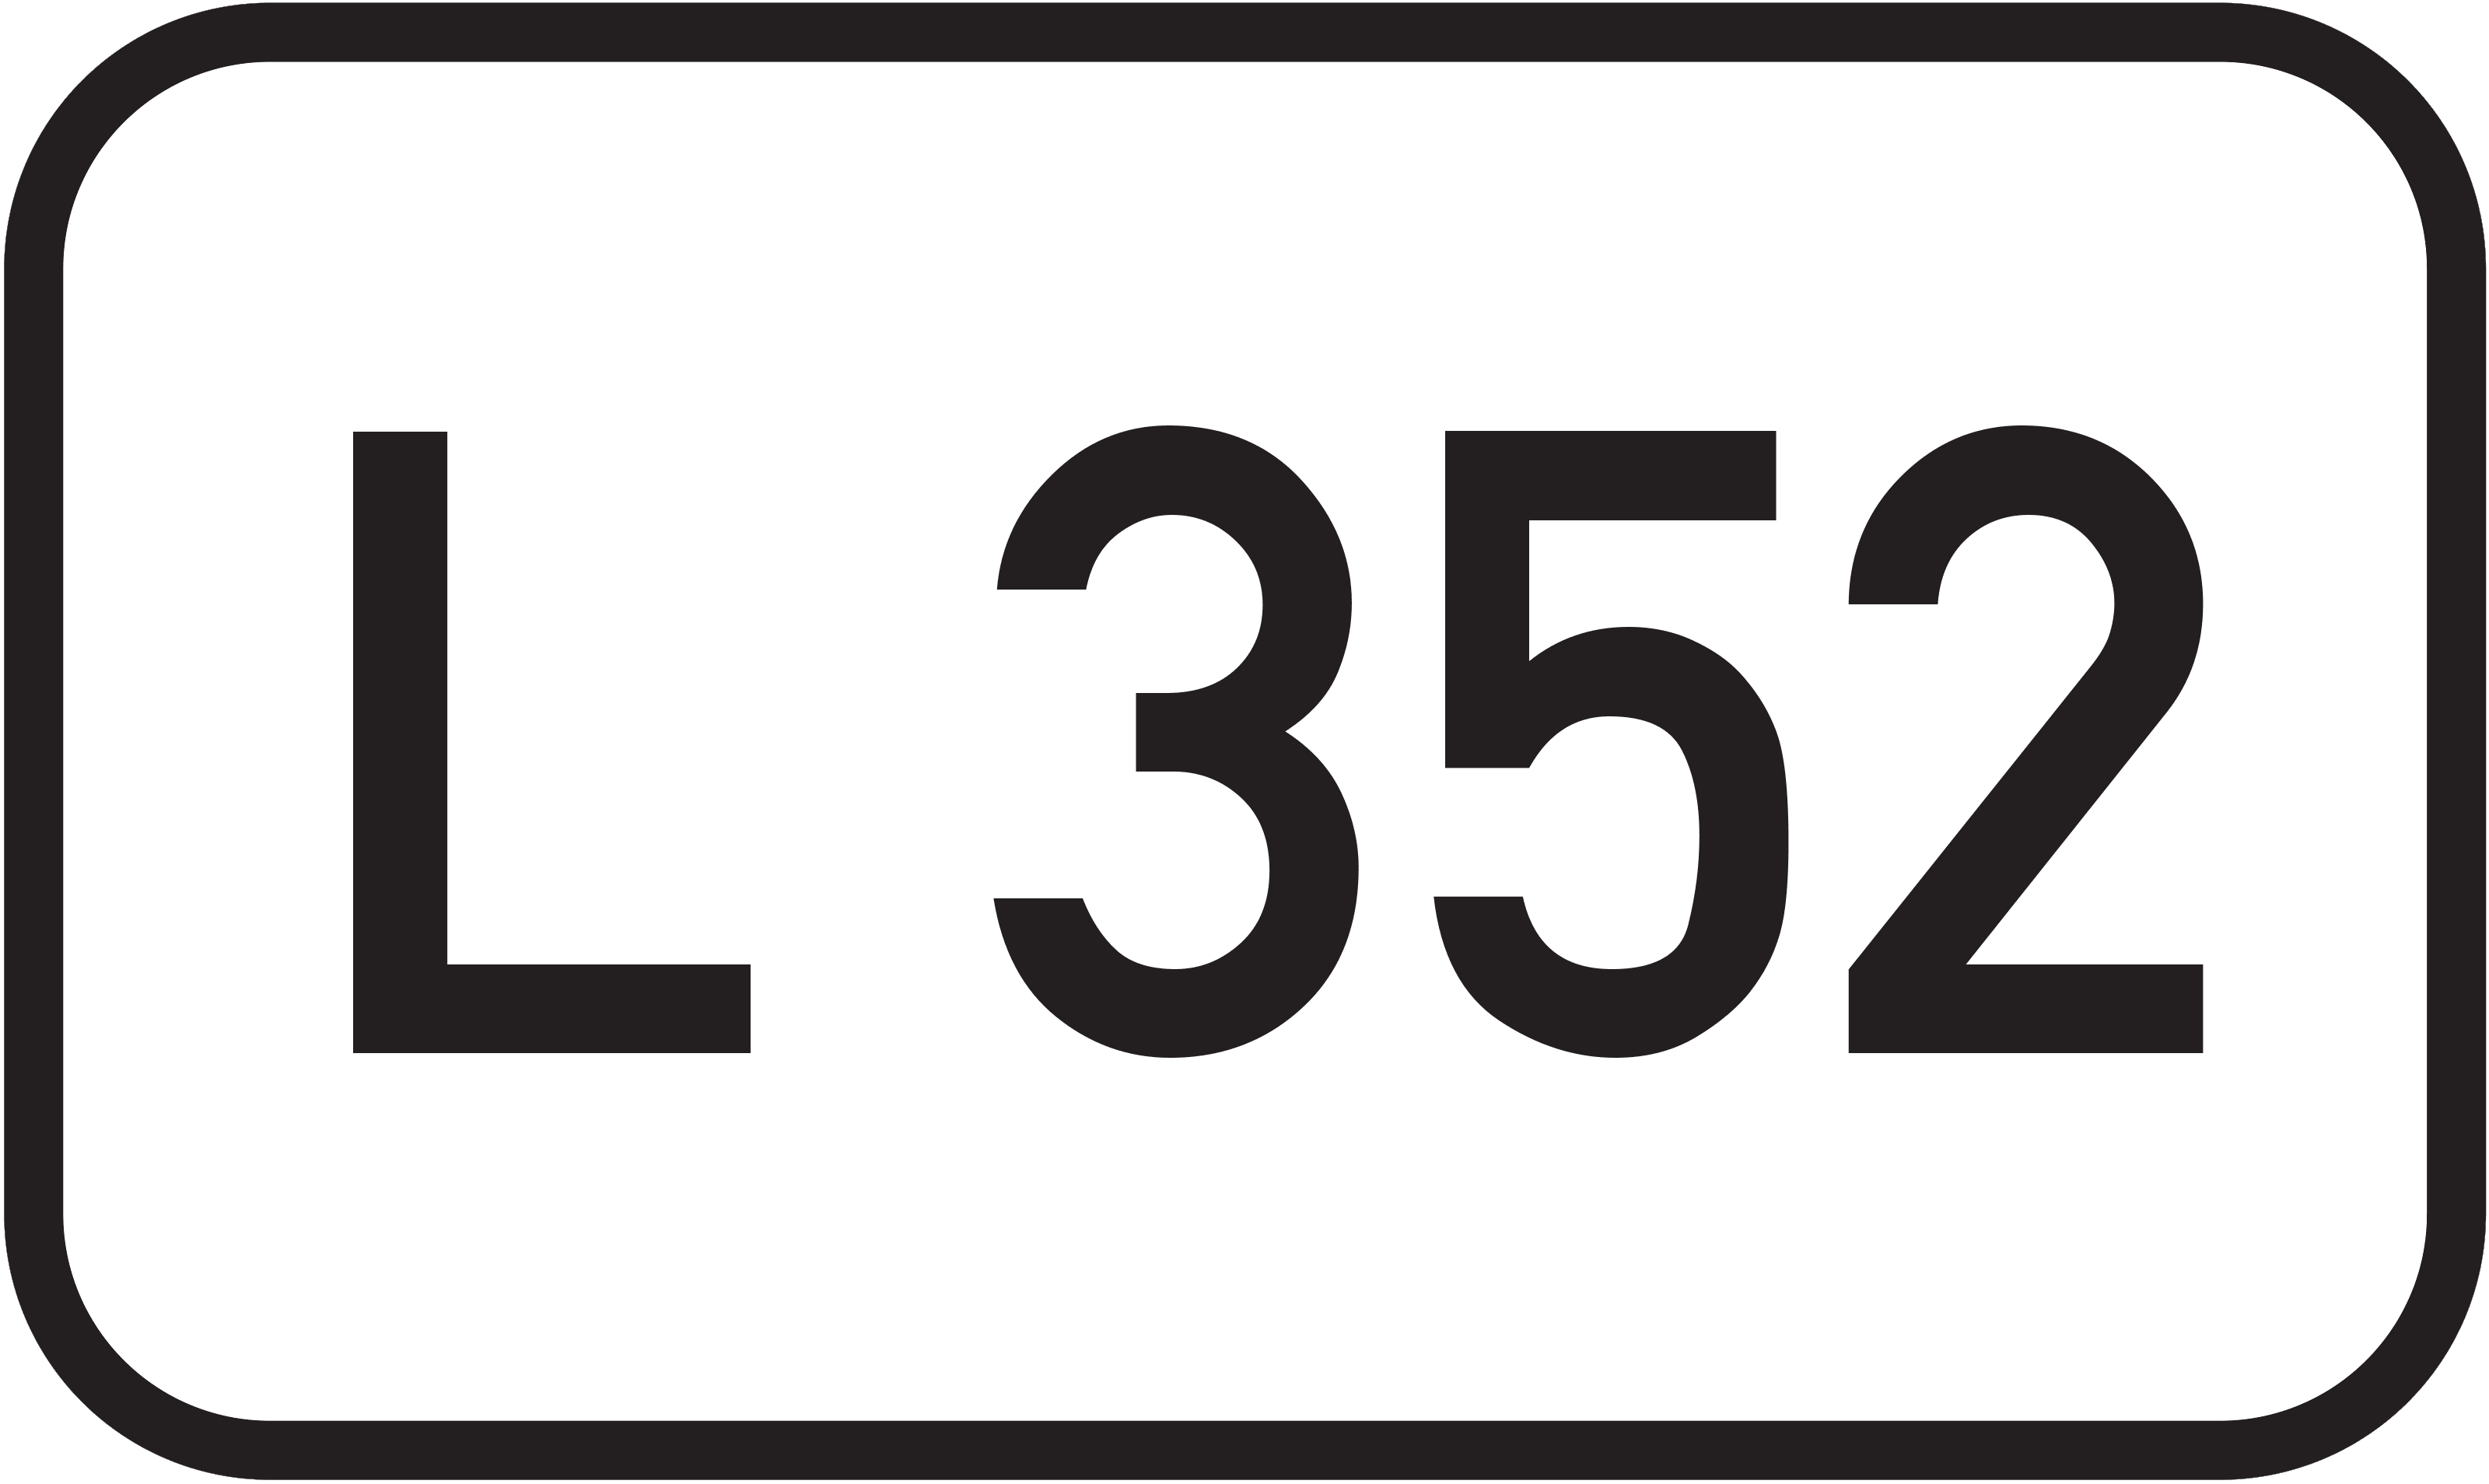 Landesstraße L 352